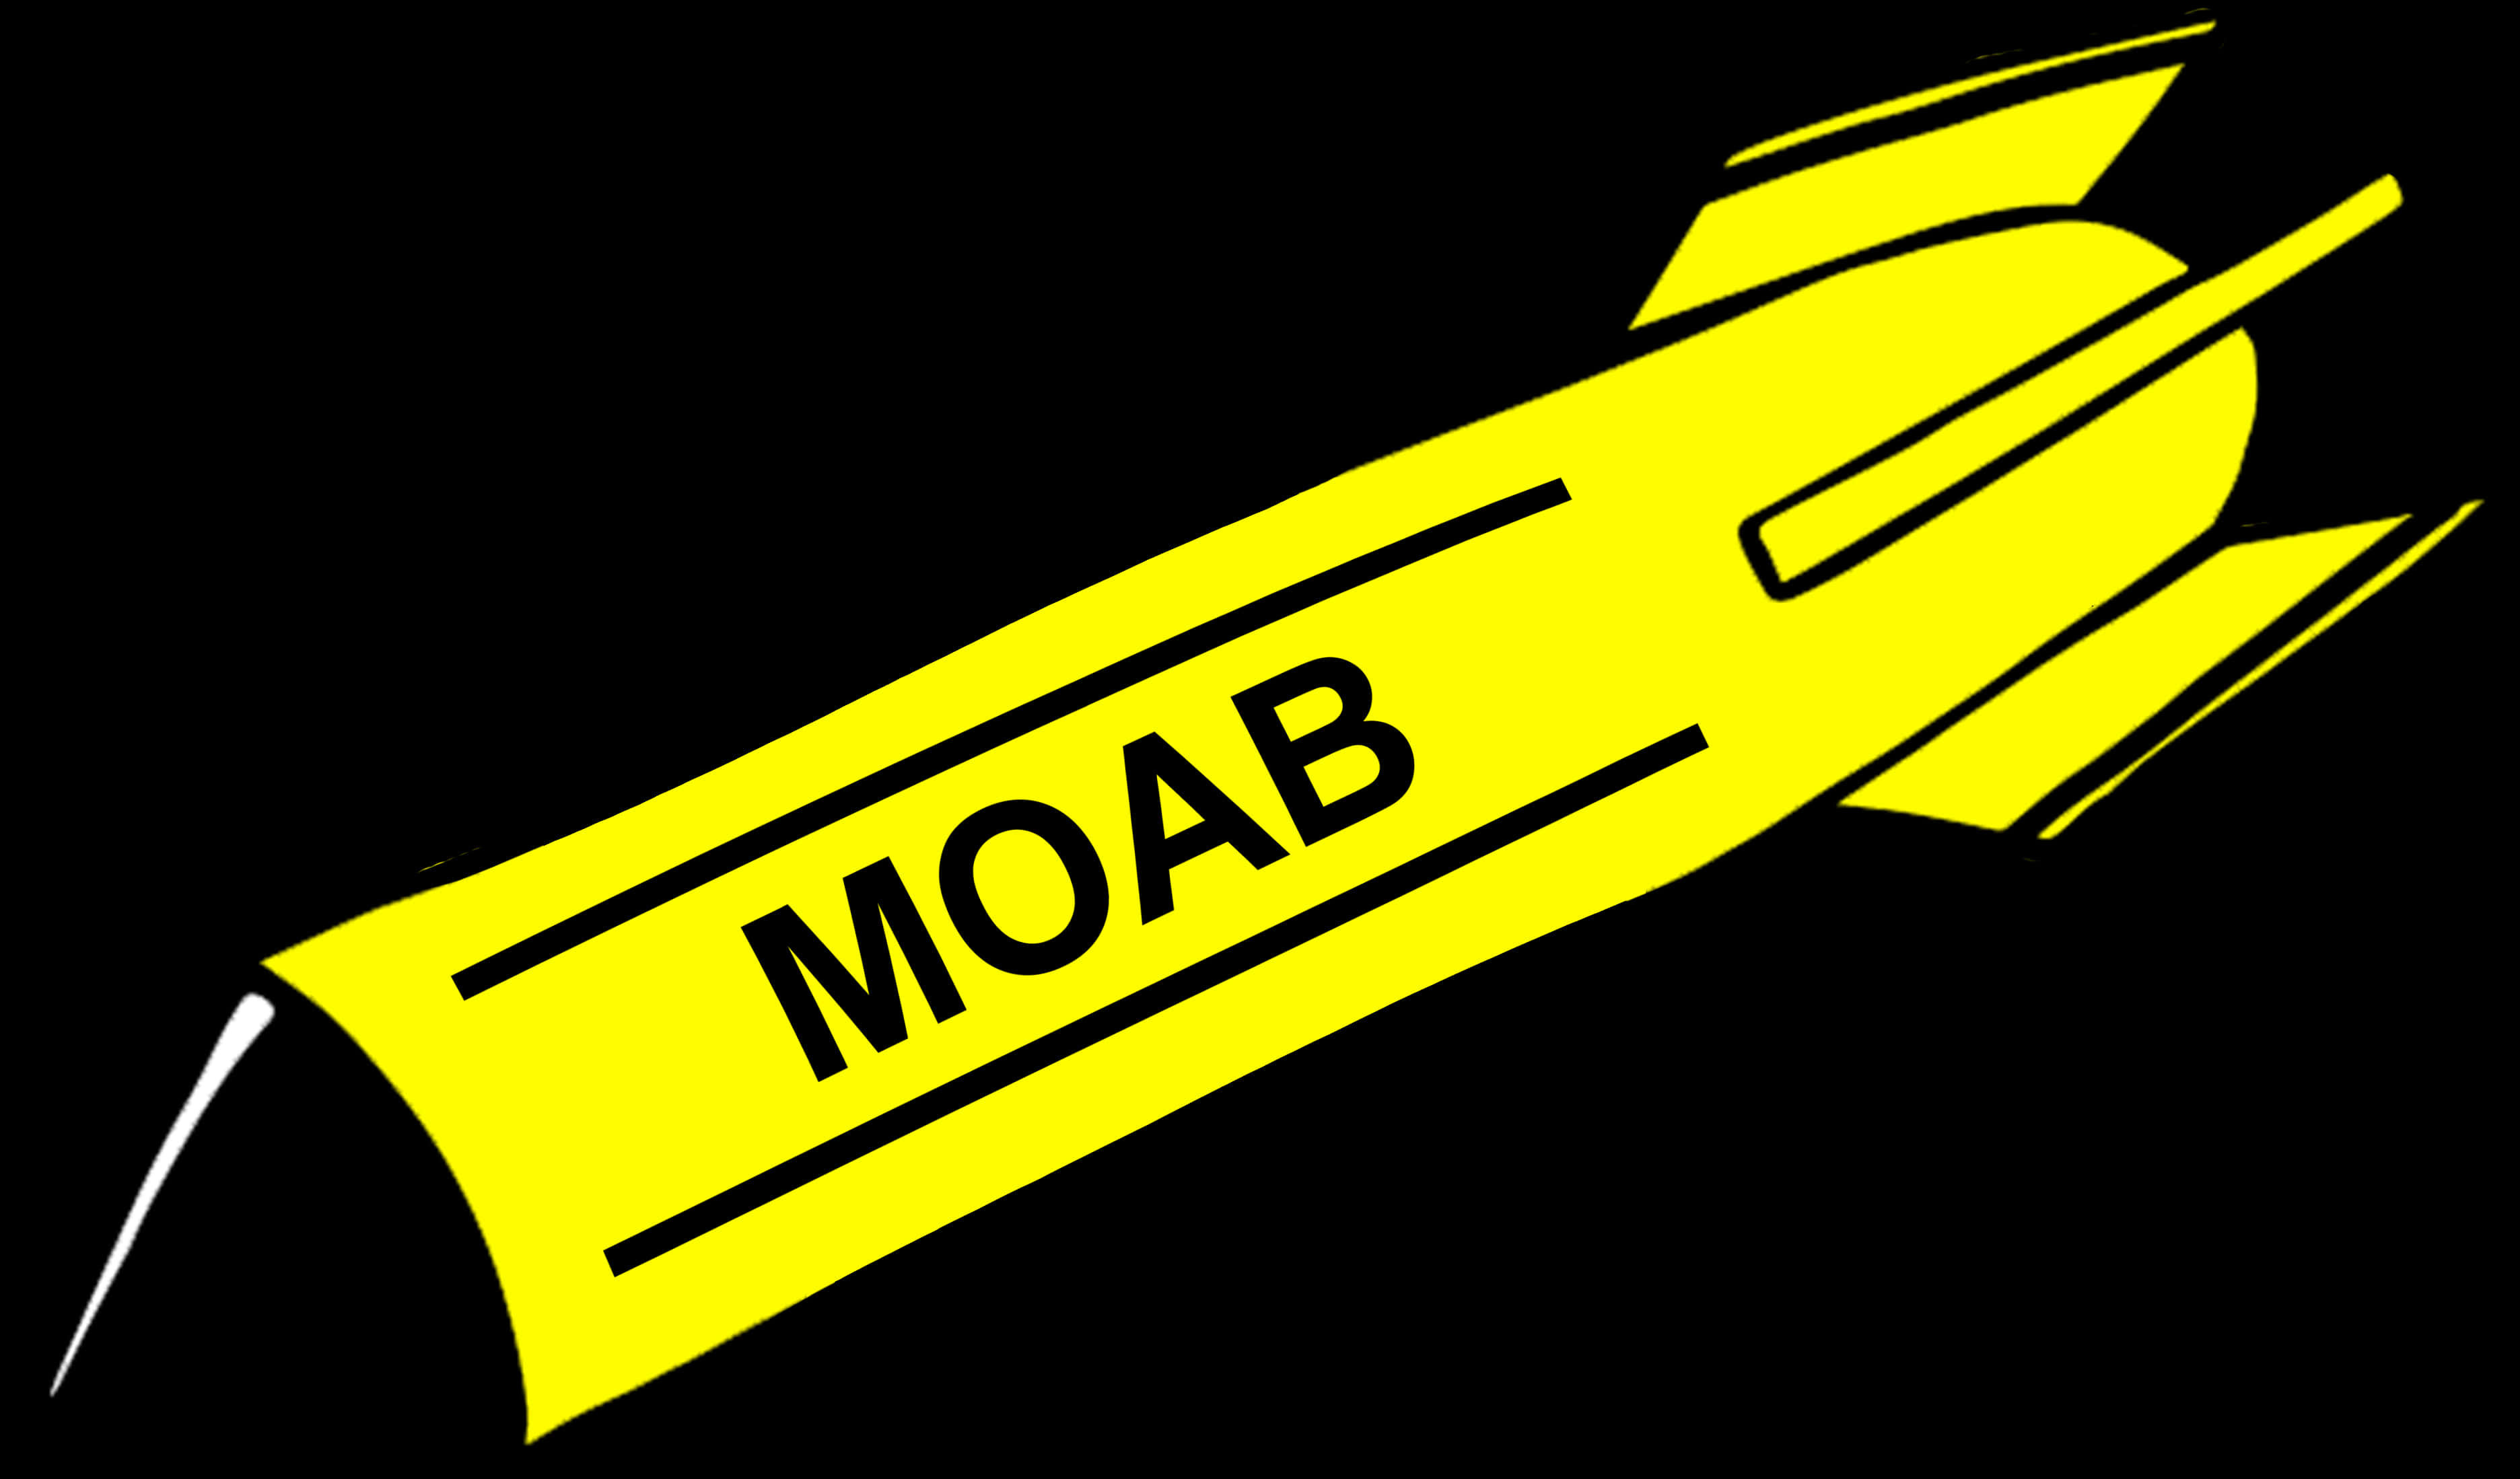 Bomb Clipart Moab - Moab Bomb Clip Art, Hd Png Download